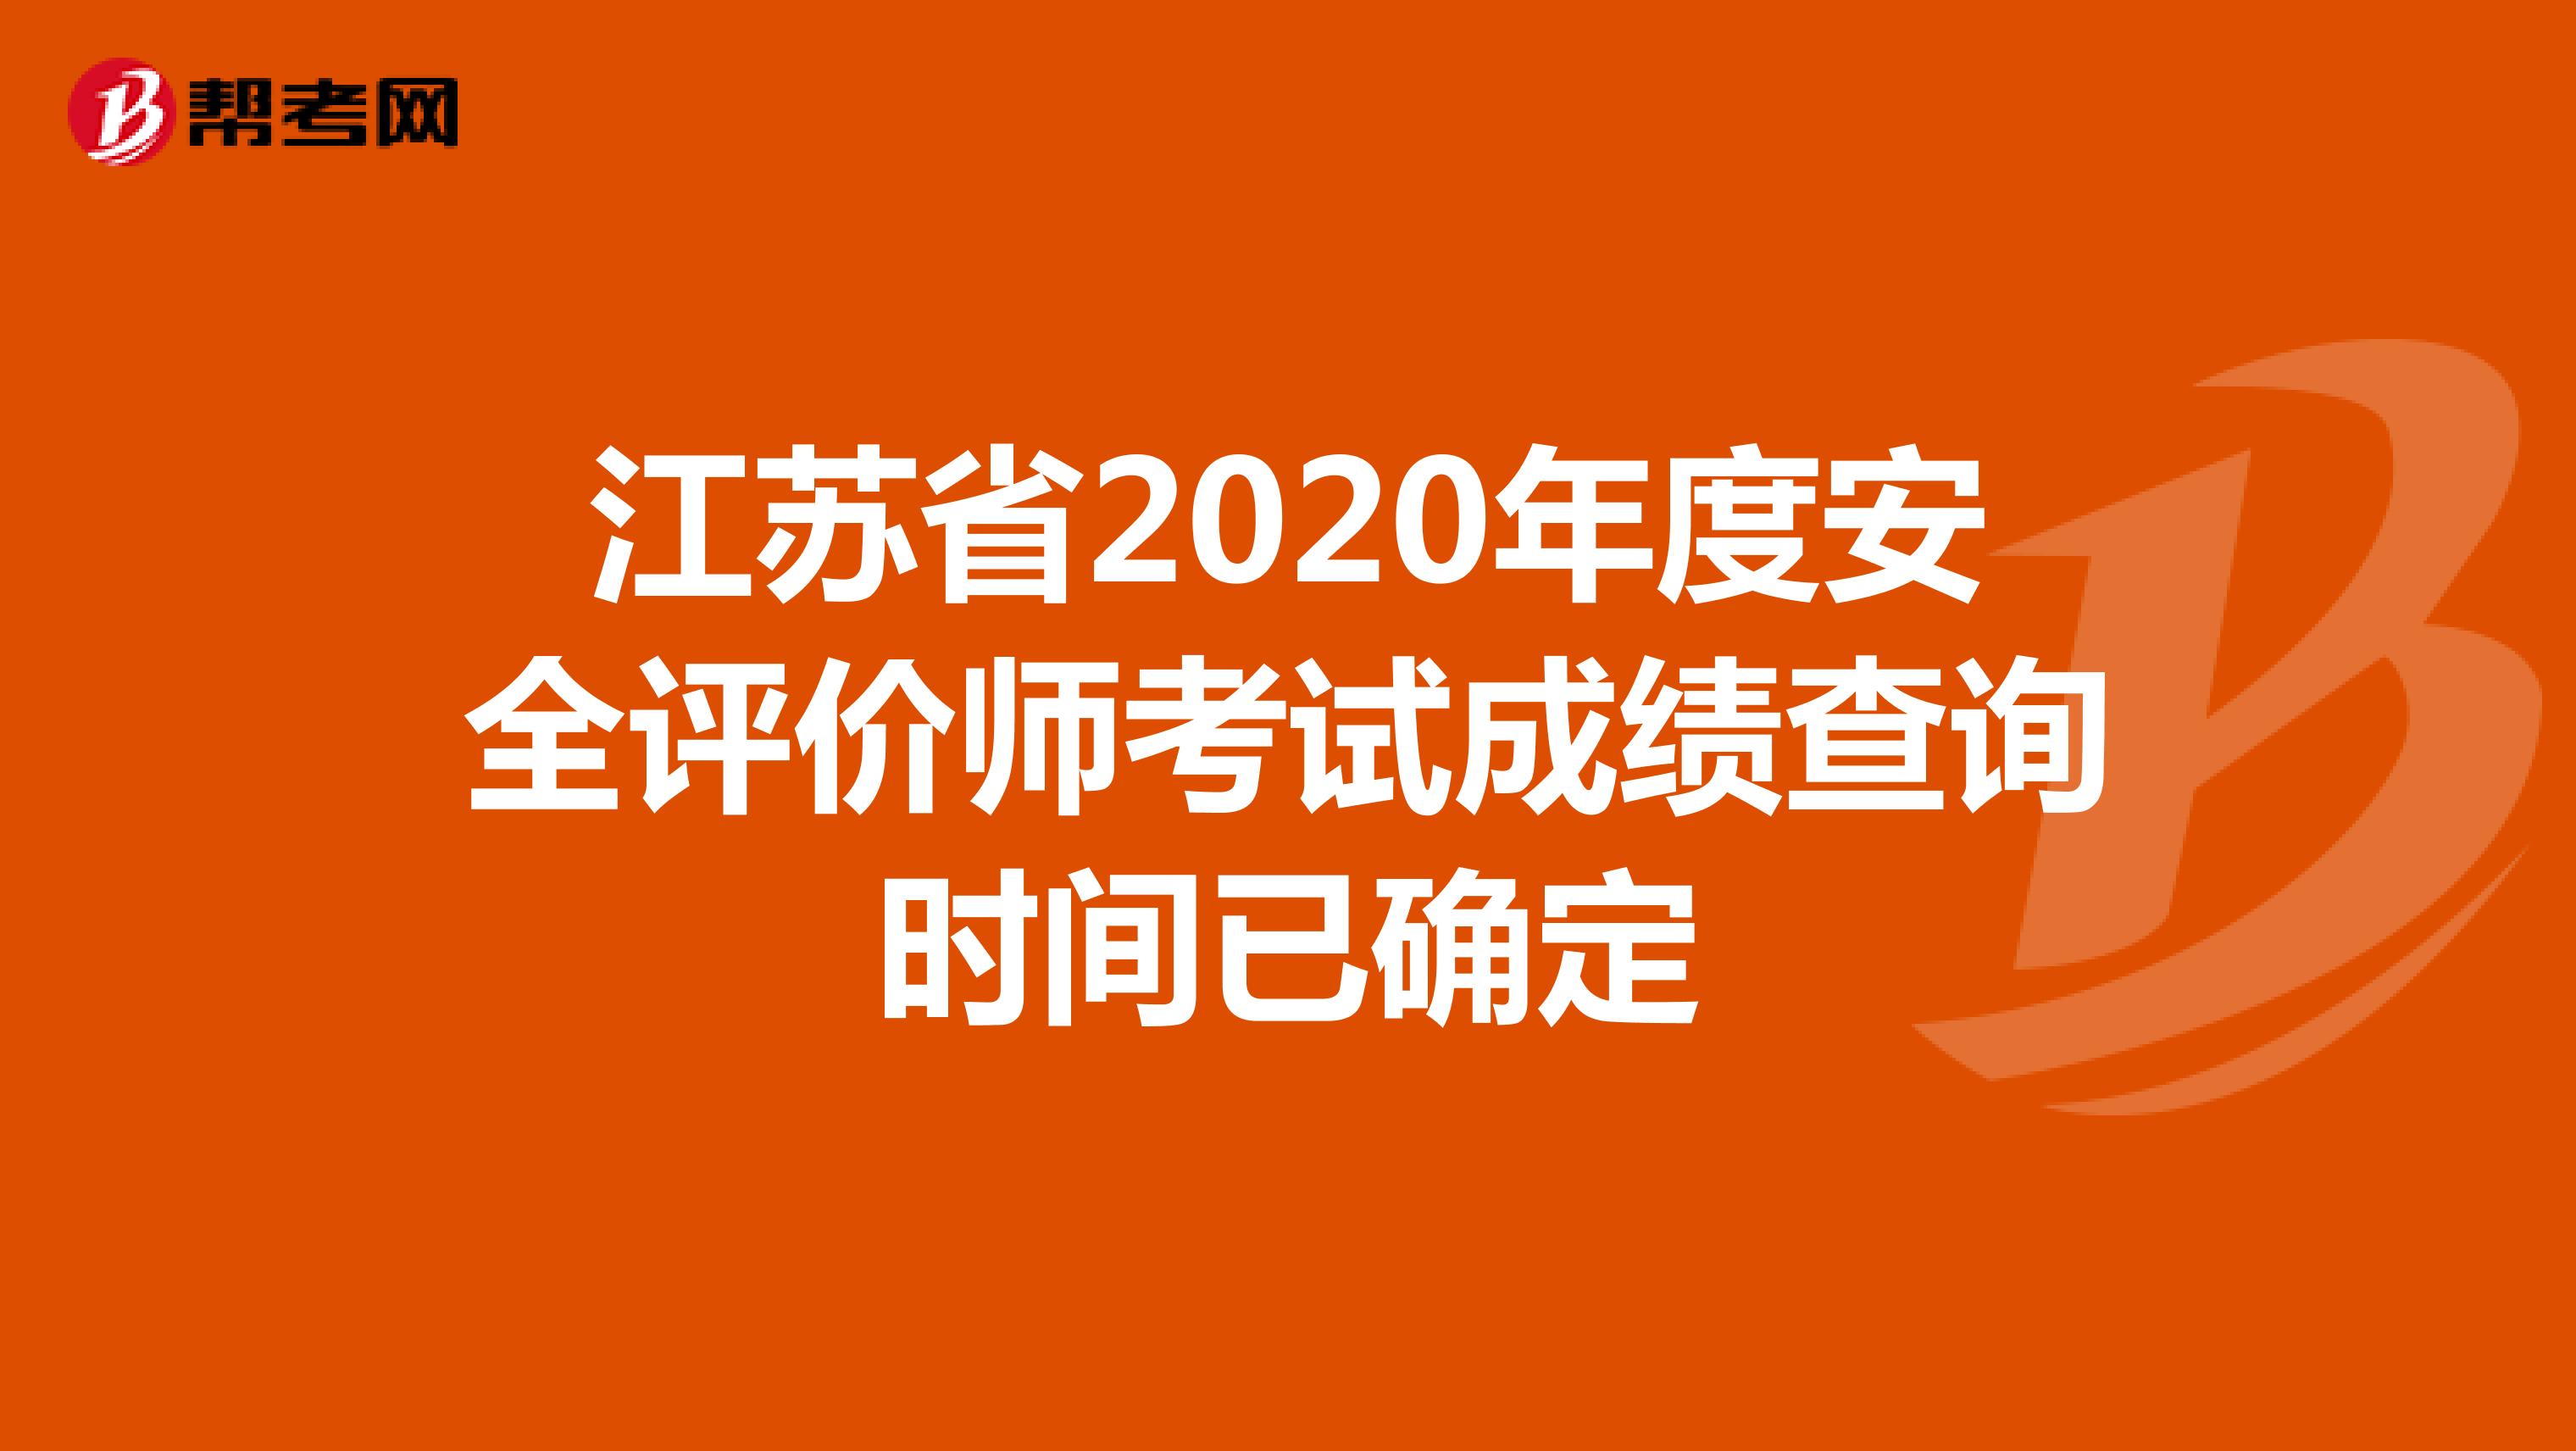 江苏省2020年度安全评价师考试成绩查询时间已确定